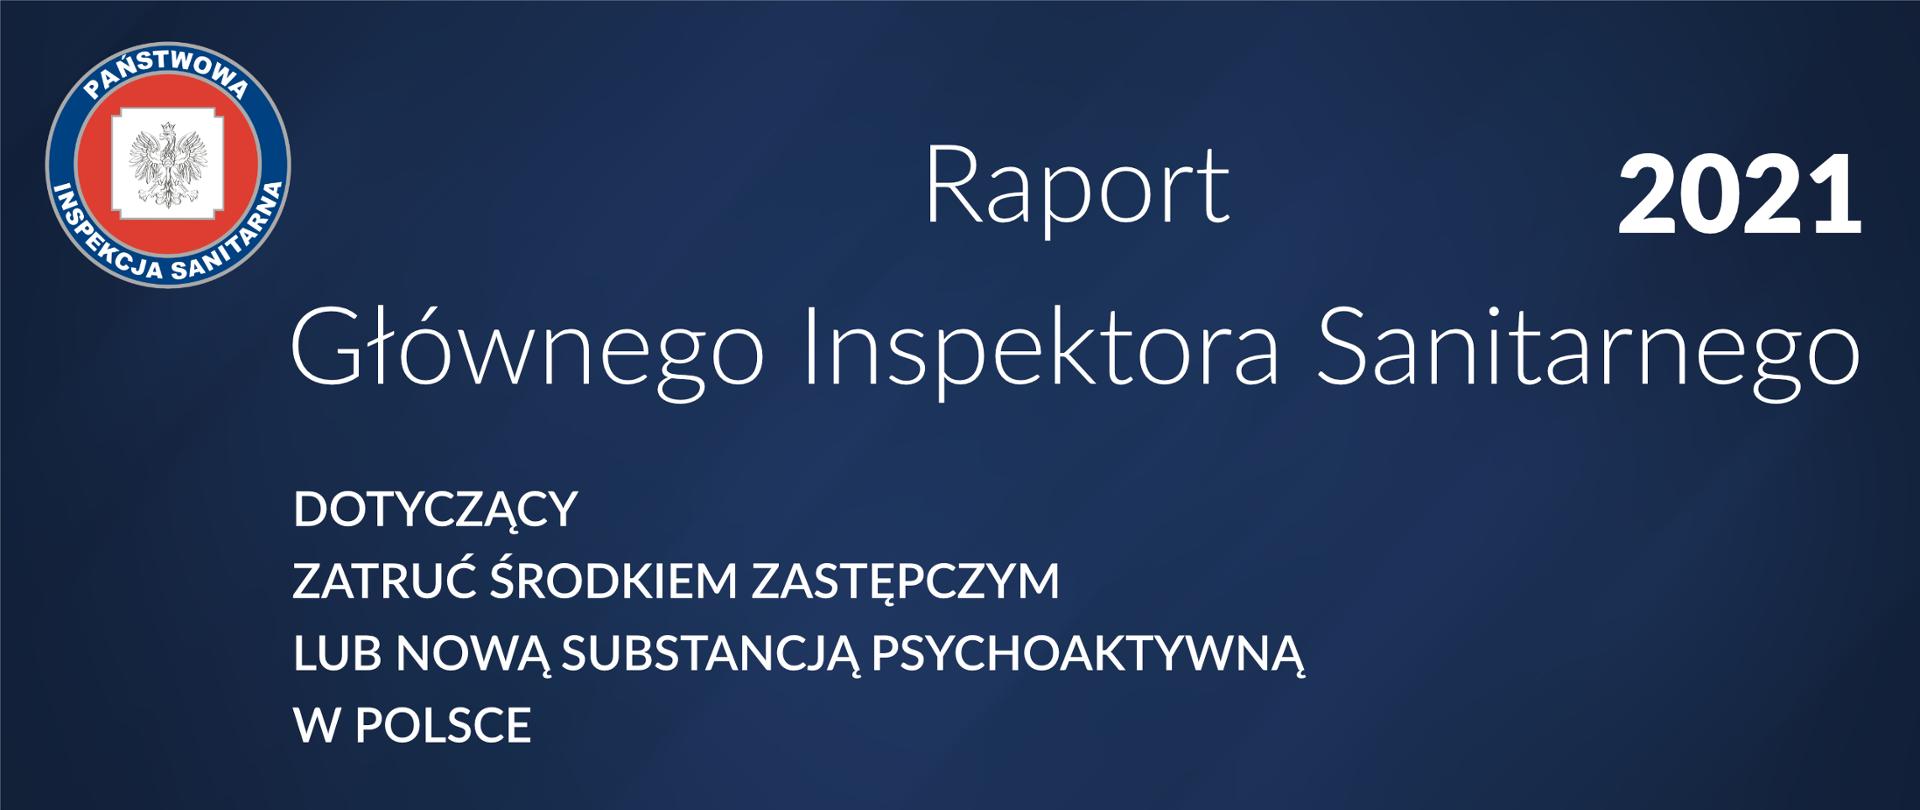 Raport GIS 2021 zatrucia środkami zastępczymi lub substancjami psychoaktywnymi w Polsce